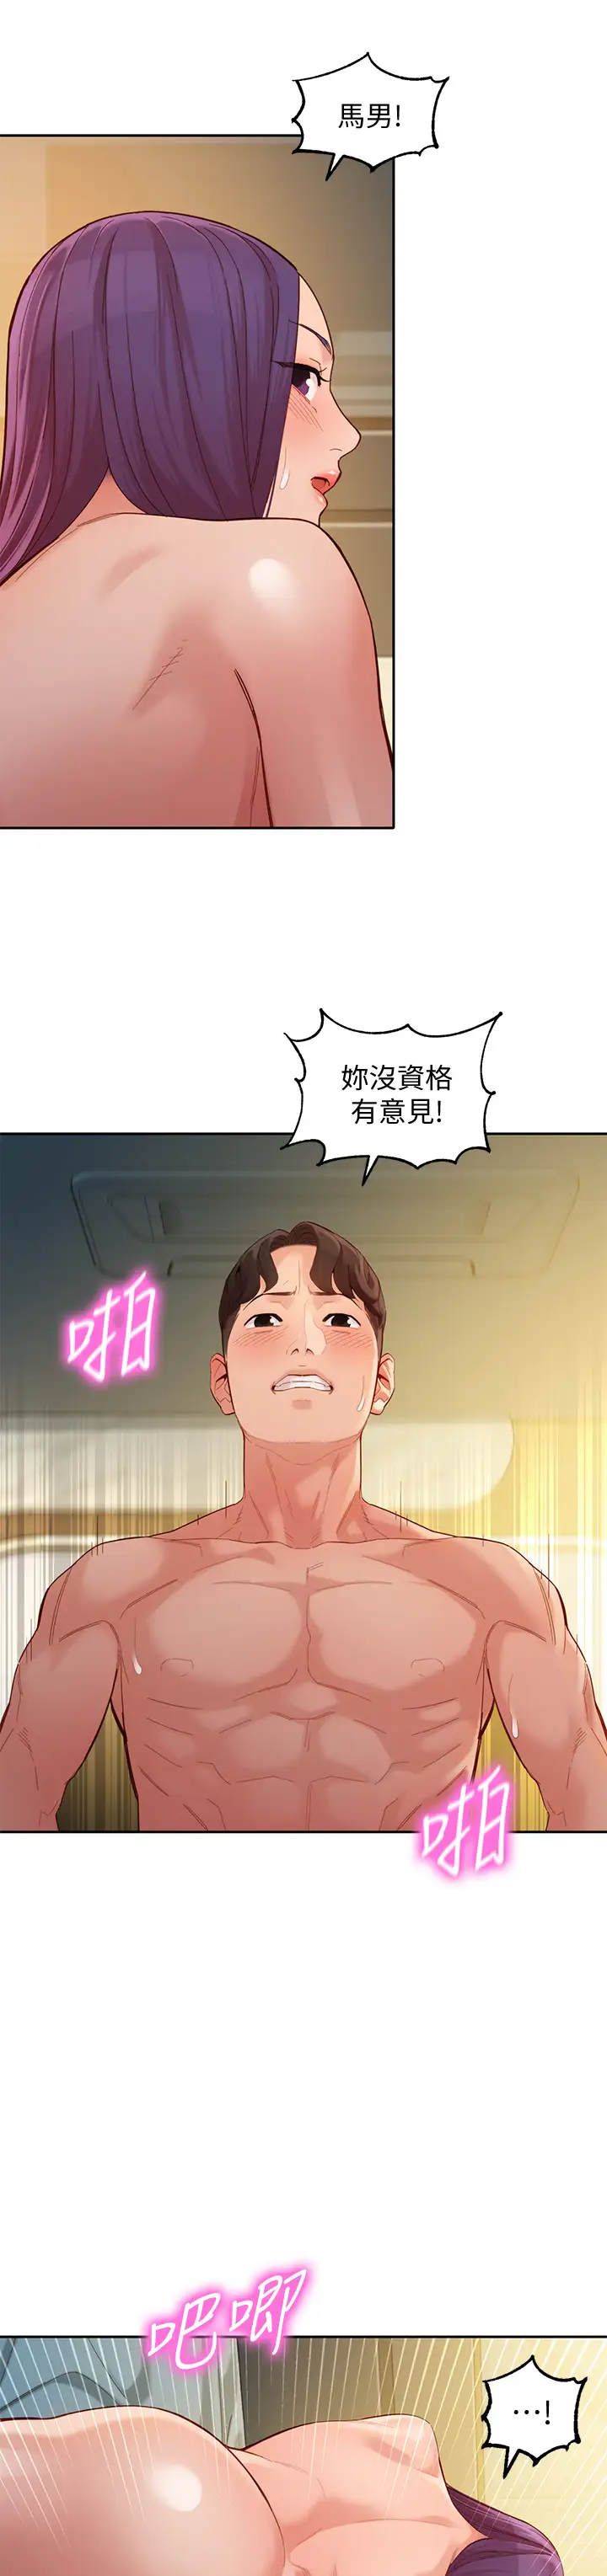 韩国污漫画 女神寫真 第52话淫靡的双飞体验 5